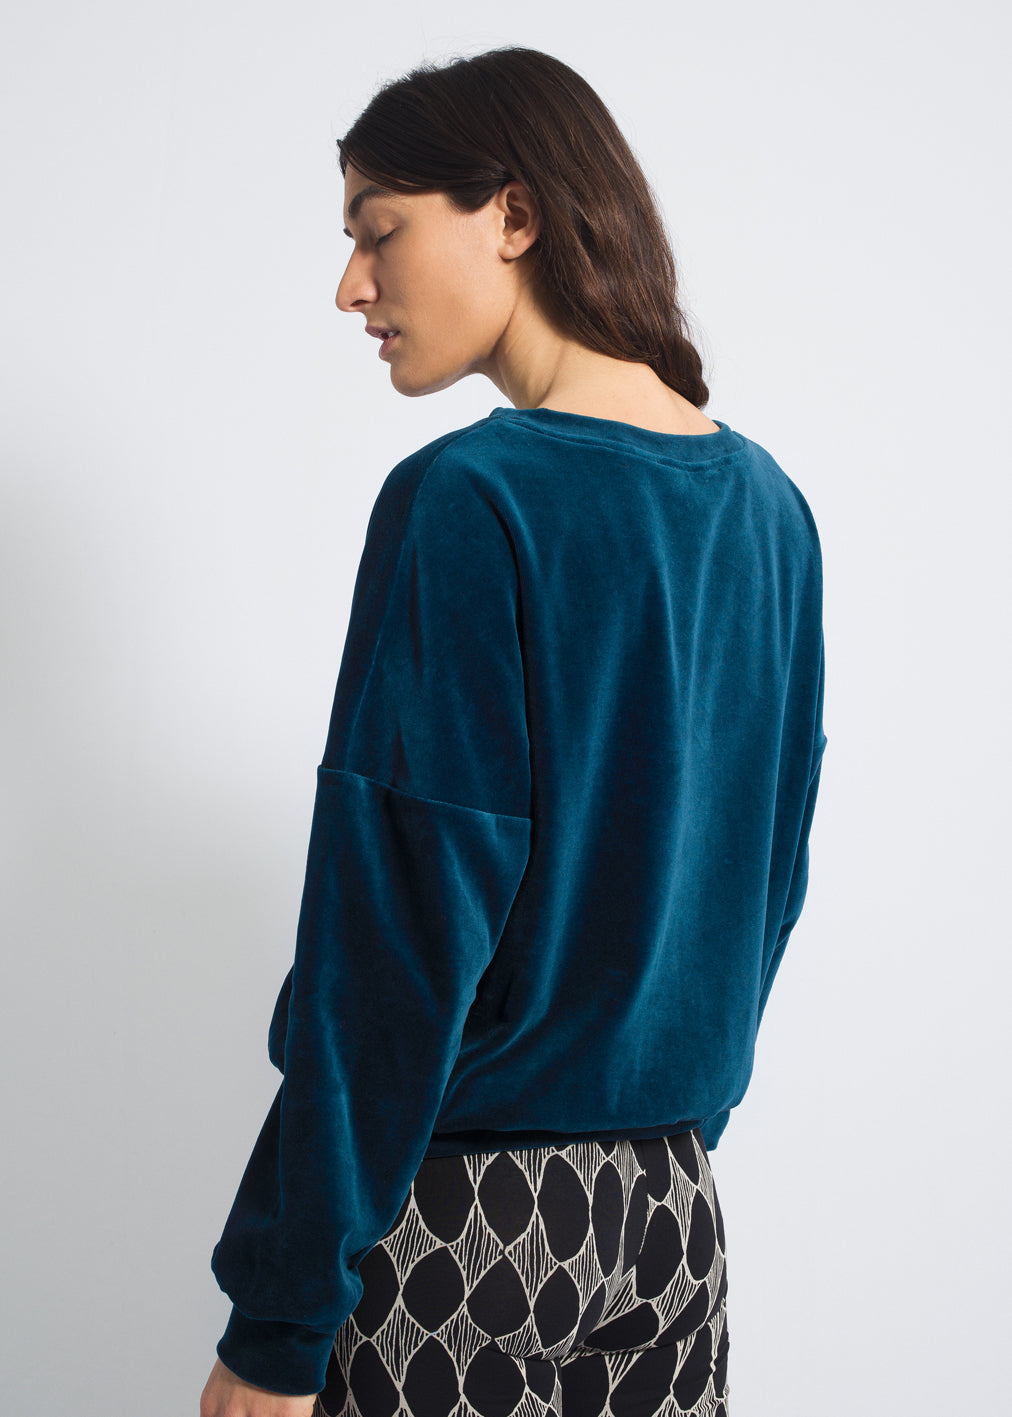 Velvet sweater in dark blue